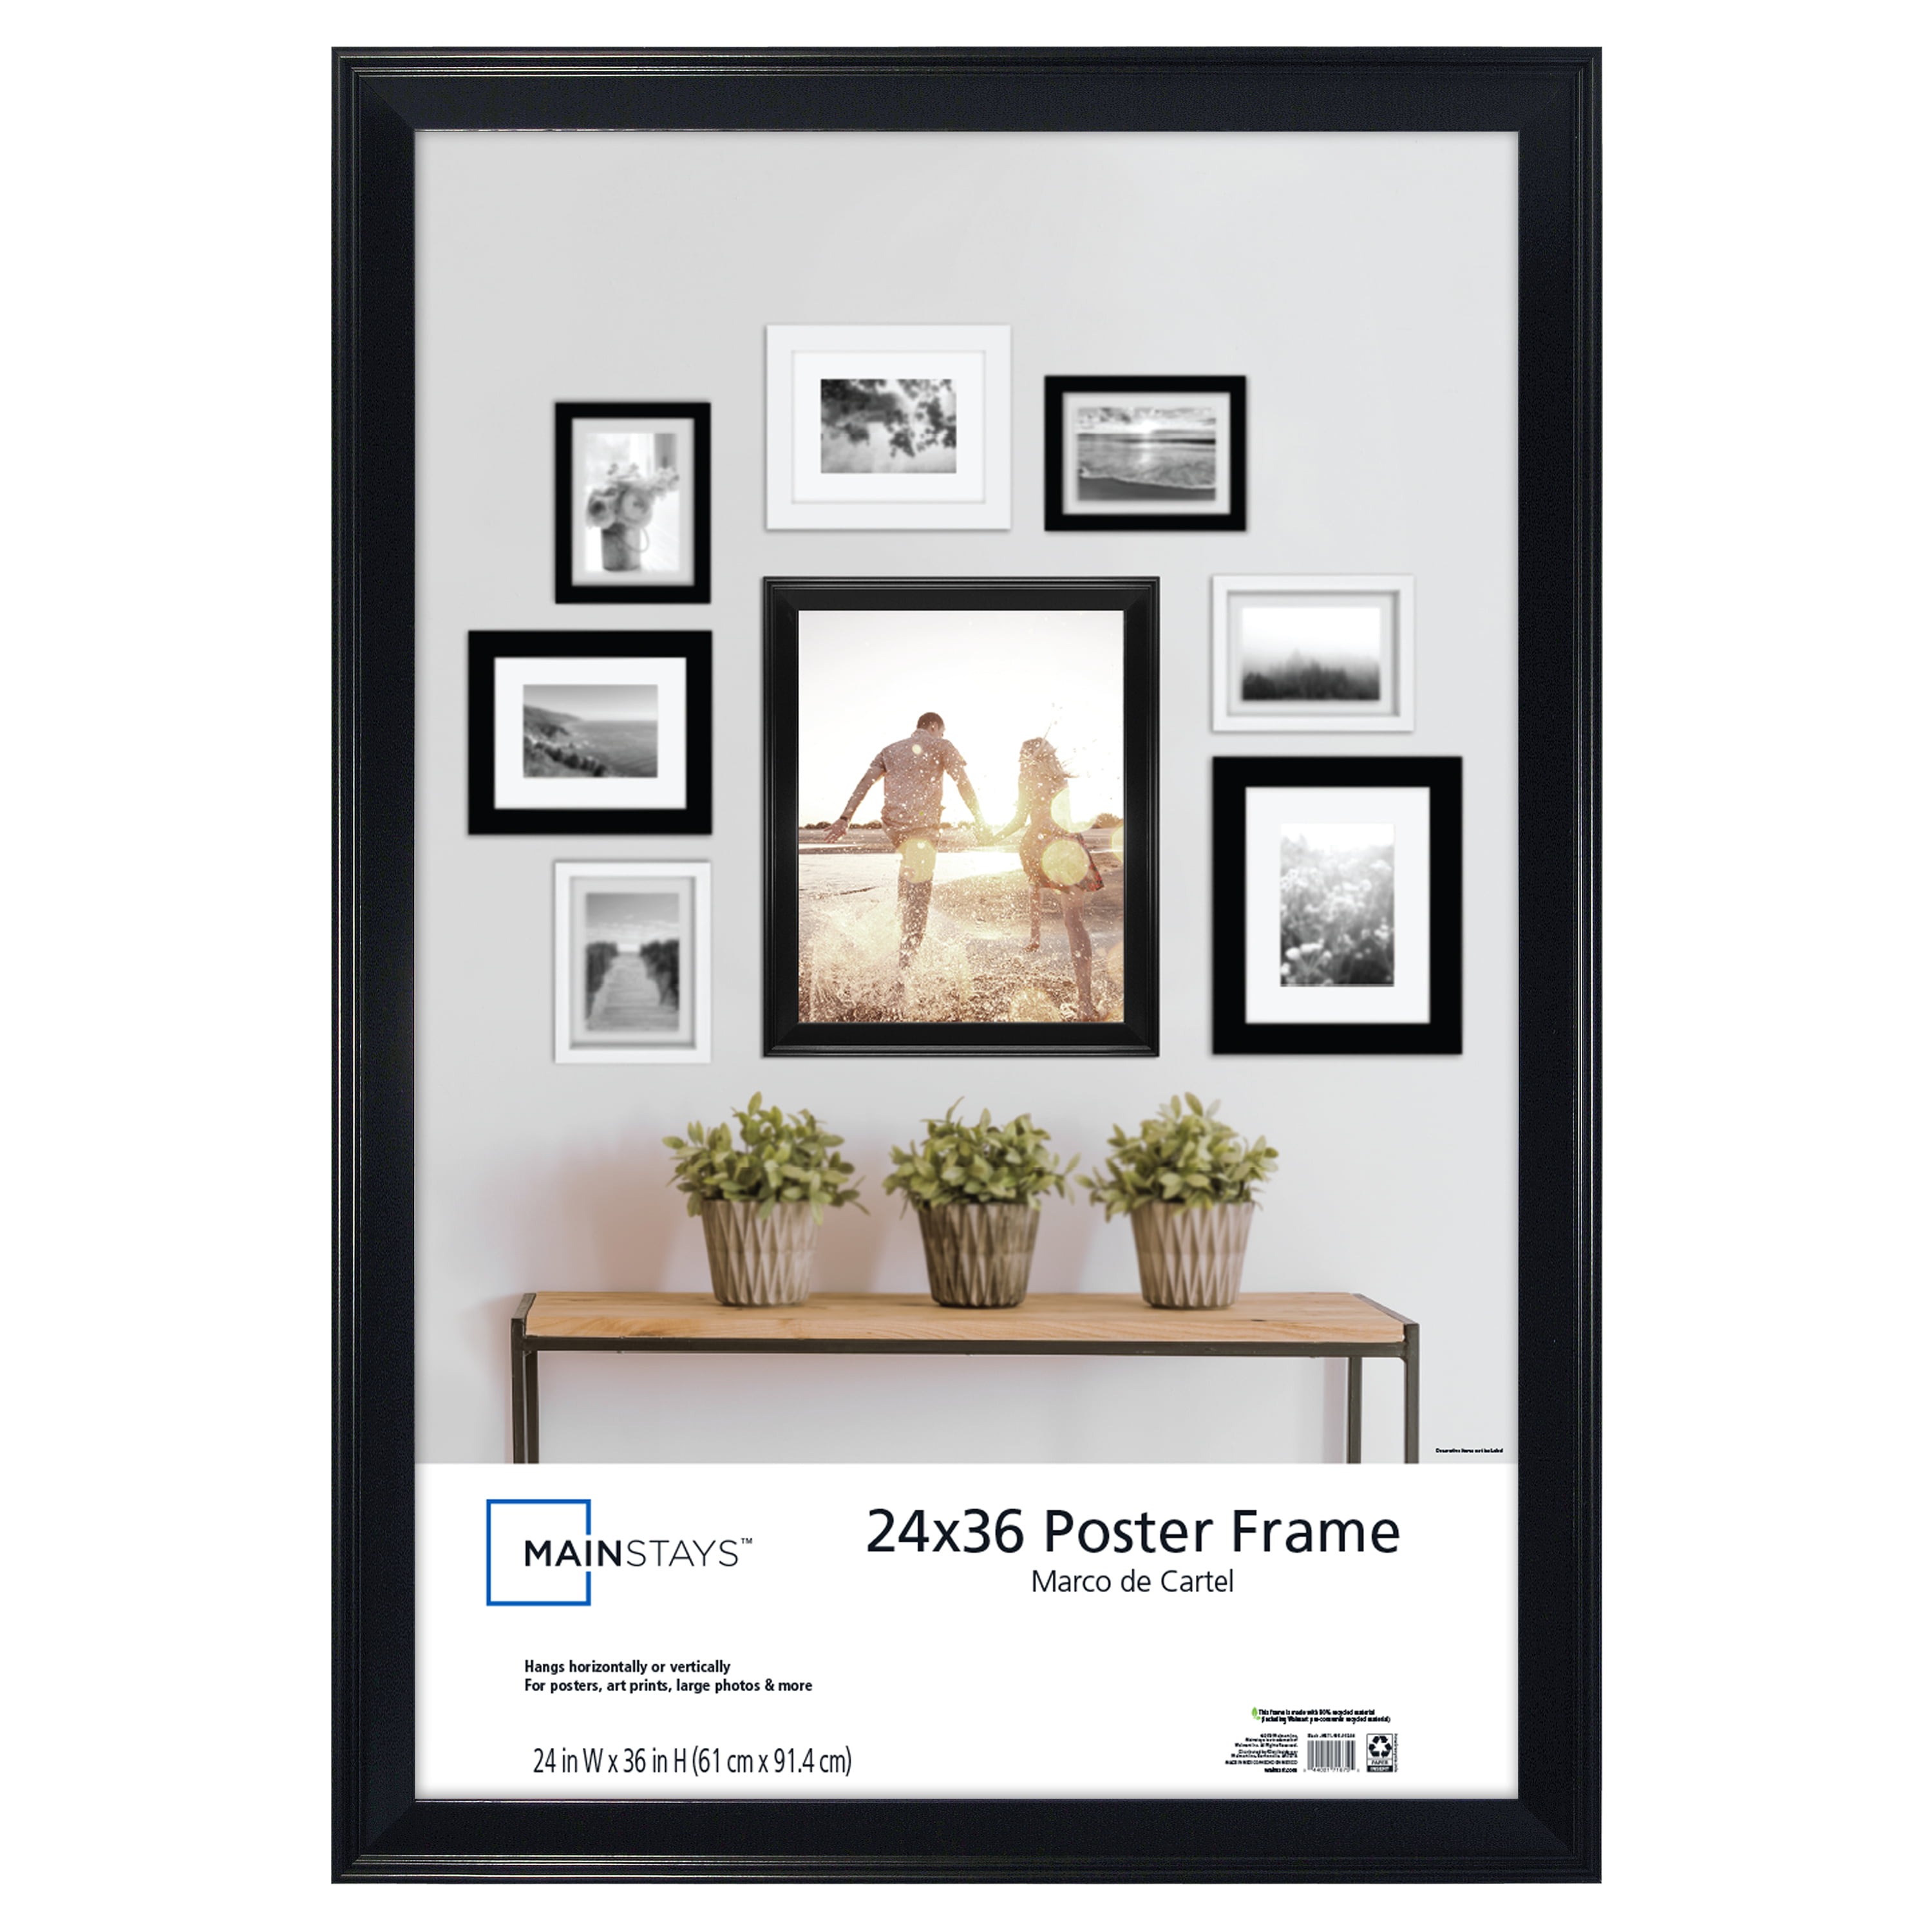 22 x 30 poster frame